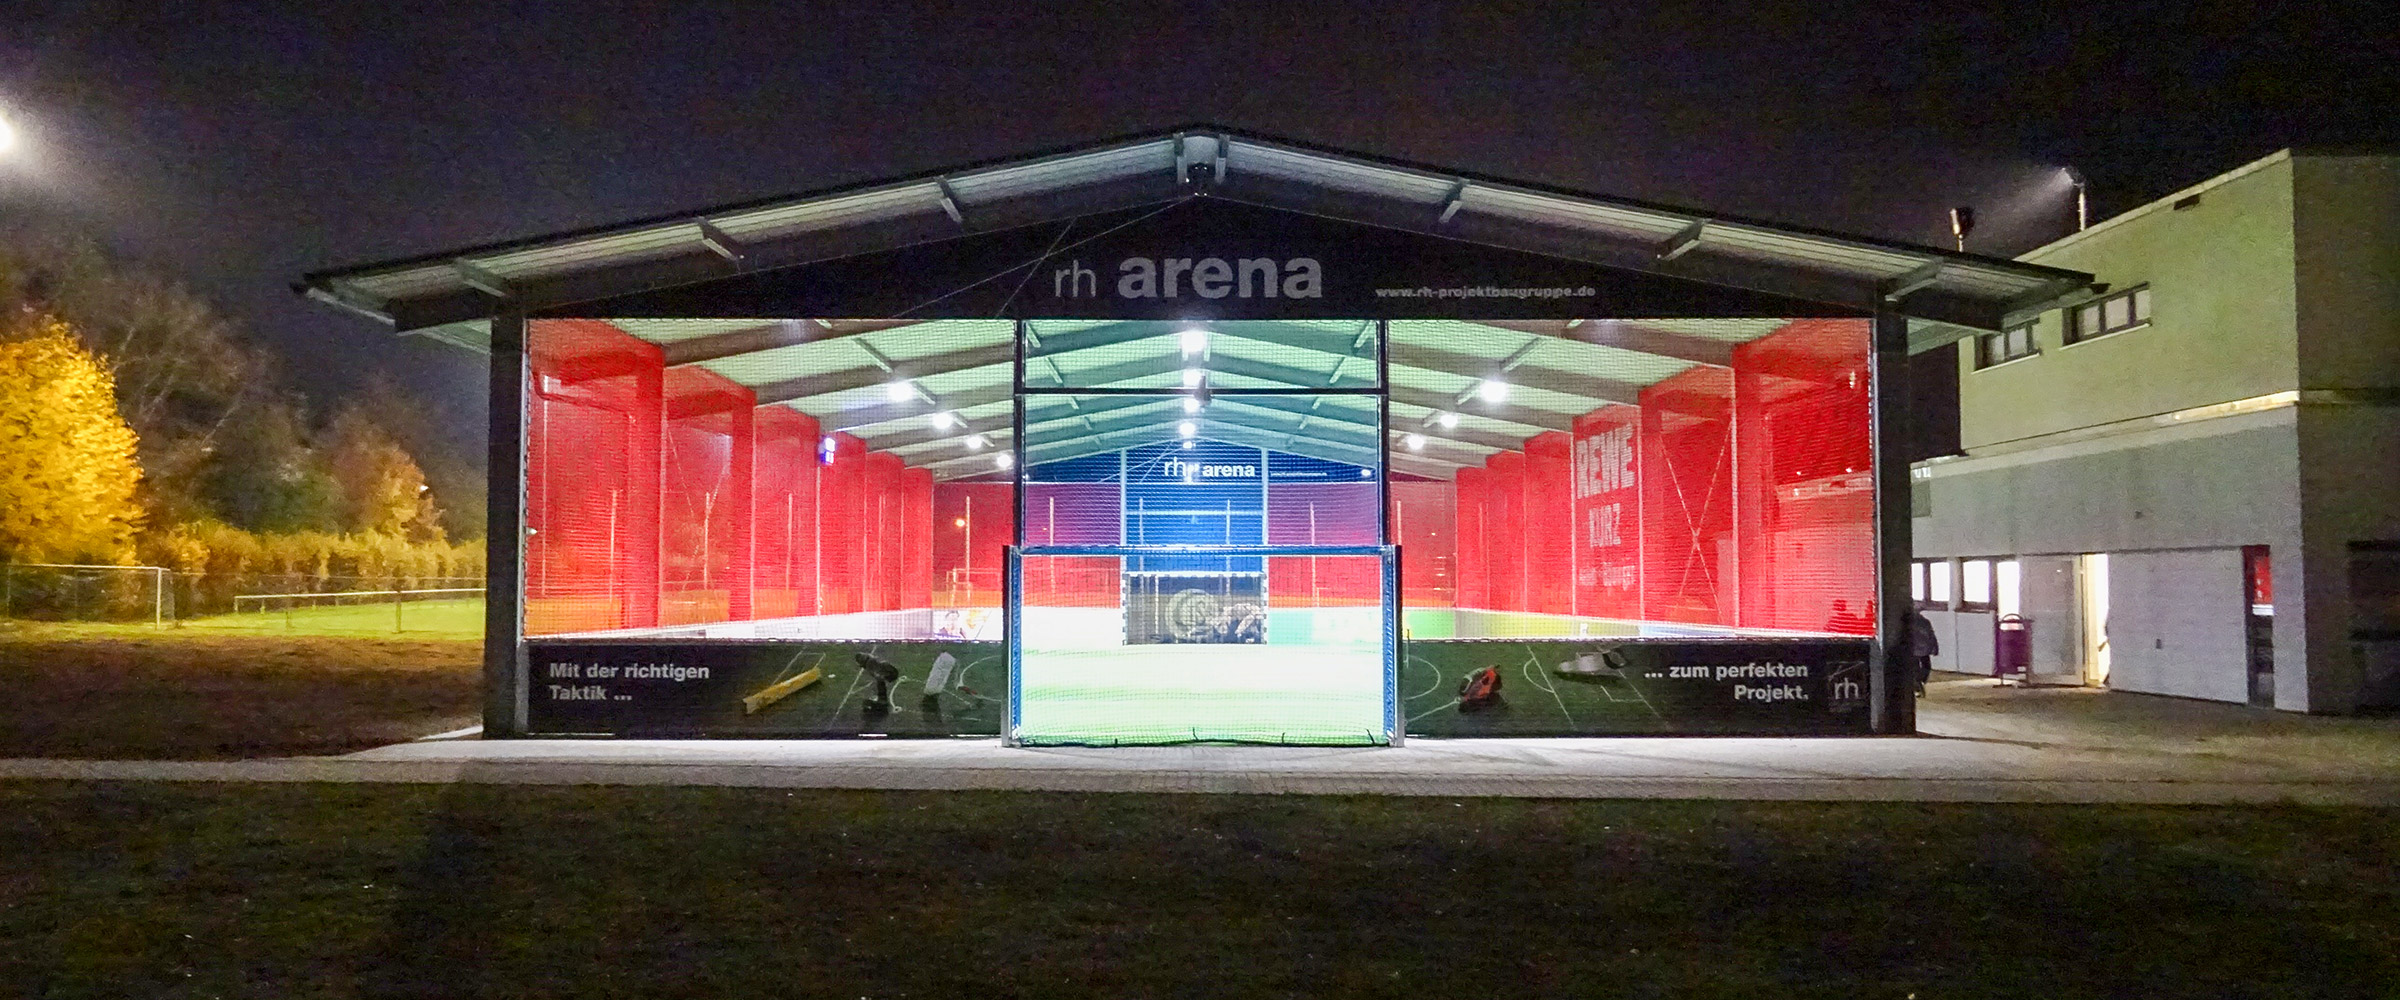 Die rh Arena in Aalen ist die günstigste und modernste Soccerhalle der Region